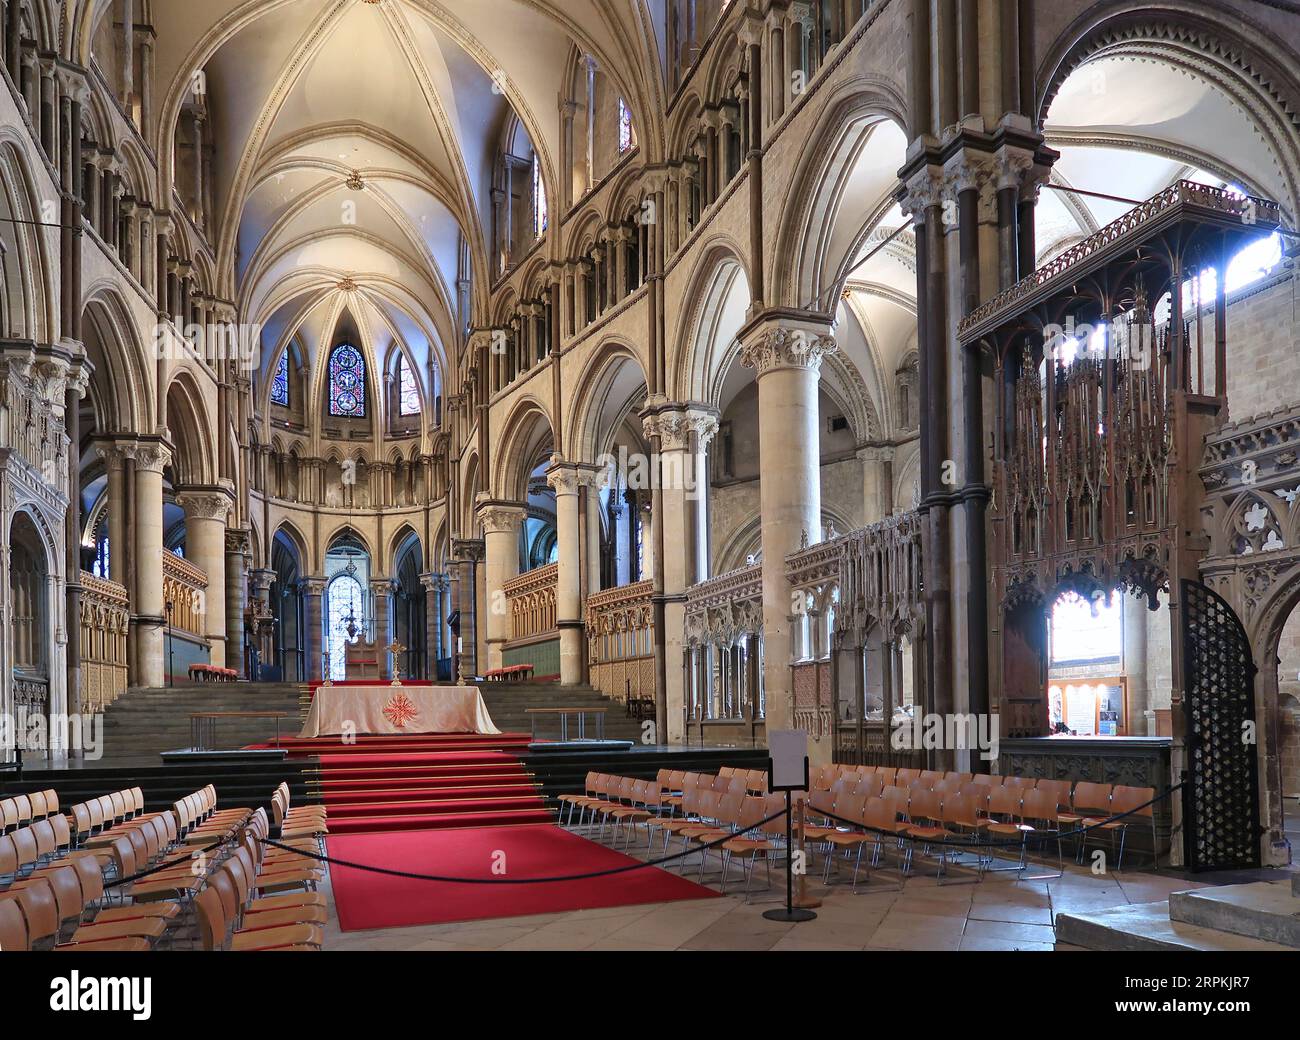 Canterbury Cathedral, Kent, Großbritannien. Blick auf das Quire mit Blick auf den Altar und die Dreifaltigkeitskapelle. Zeigt Steingewölbe aus dem 12. Jahrhundert. Keine Personen anwesend. Stockfoto